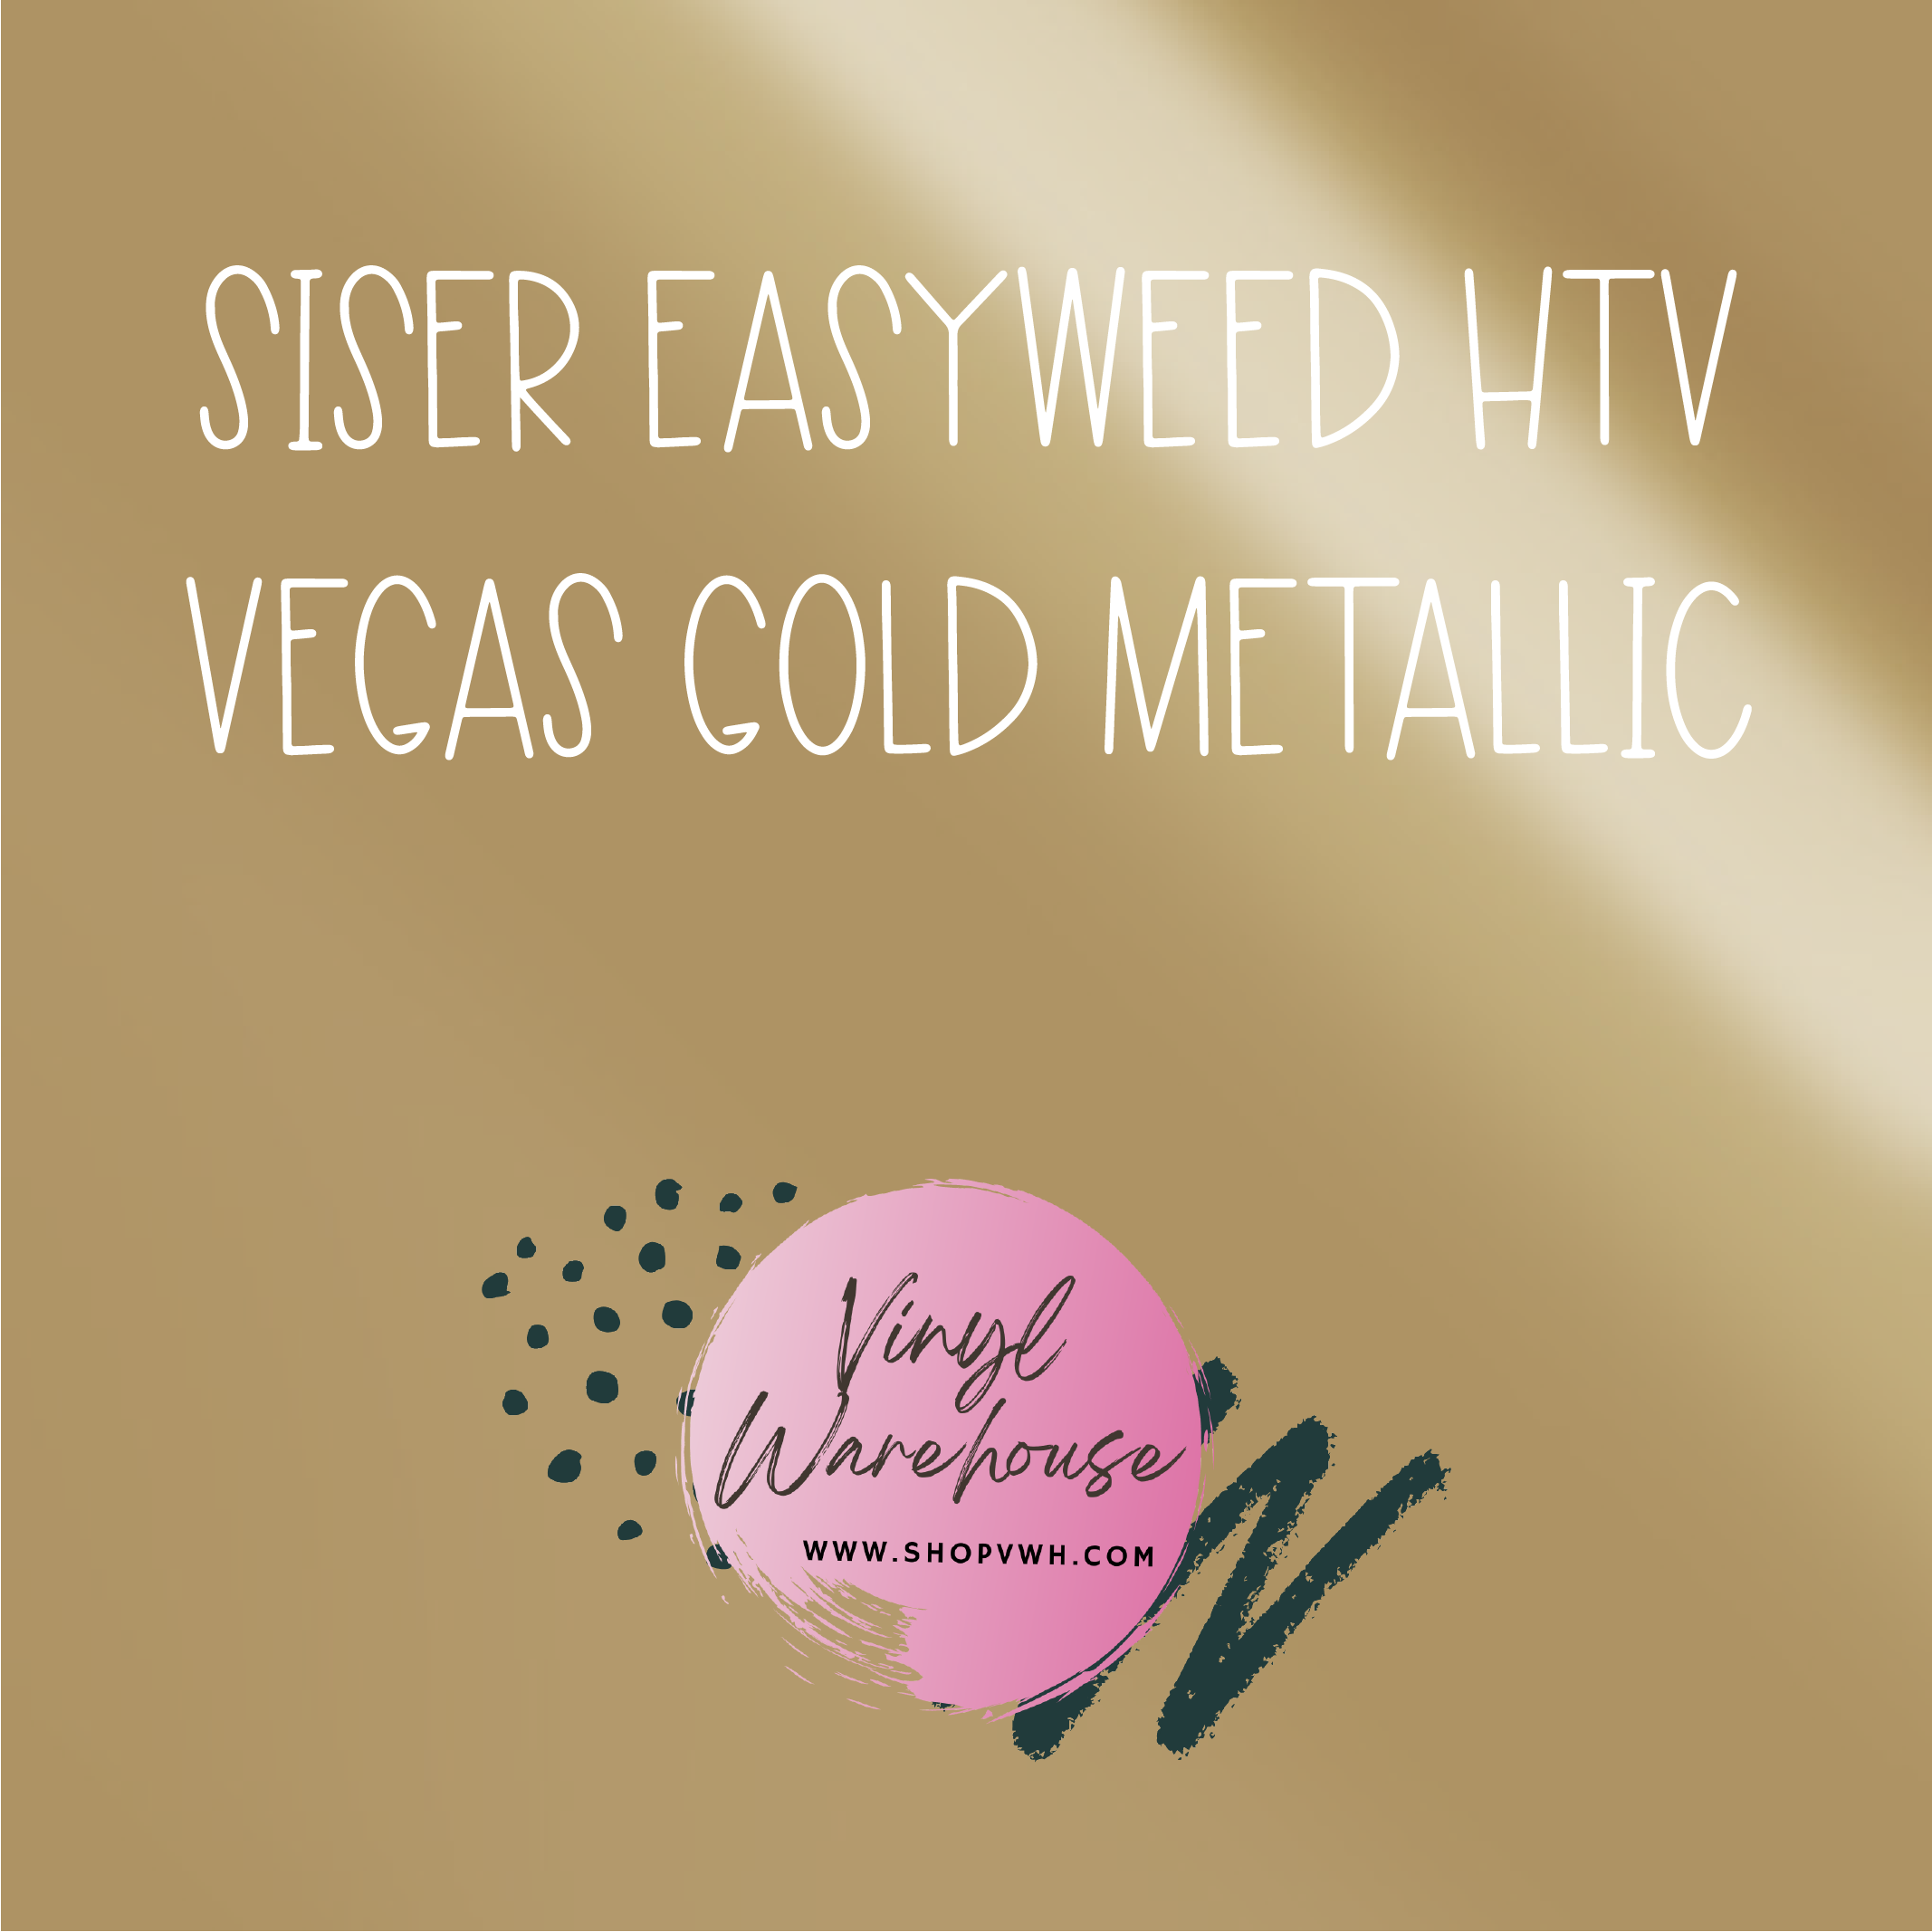 Siser EasyWeed HTV - Vegas Gold Metallic – The Vinyl Warehouse